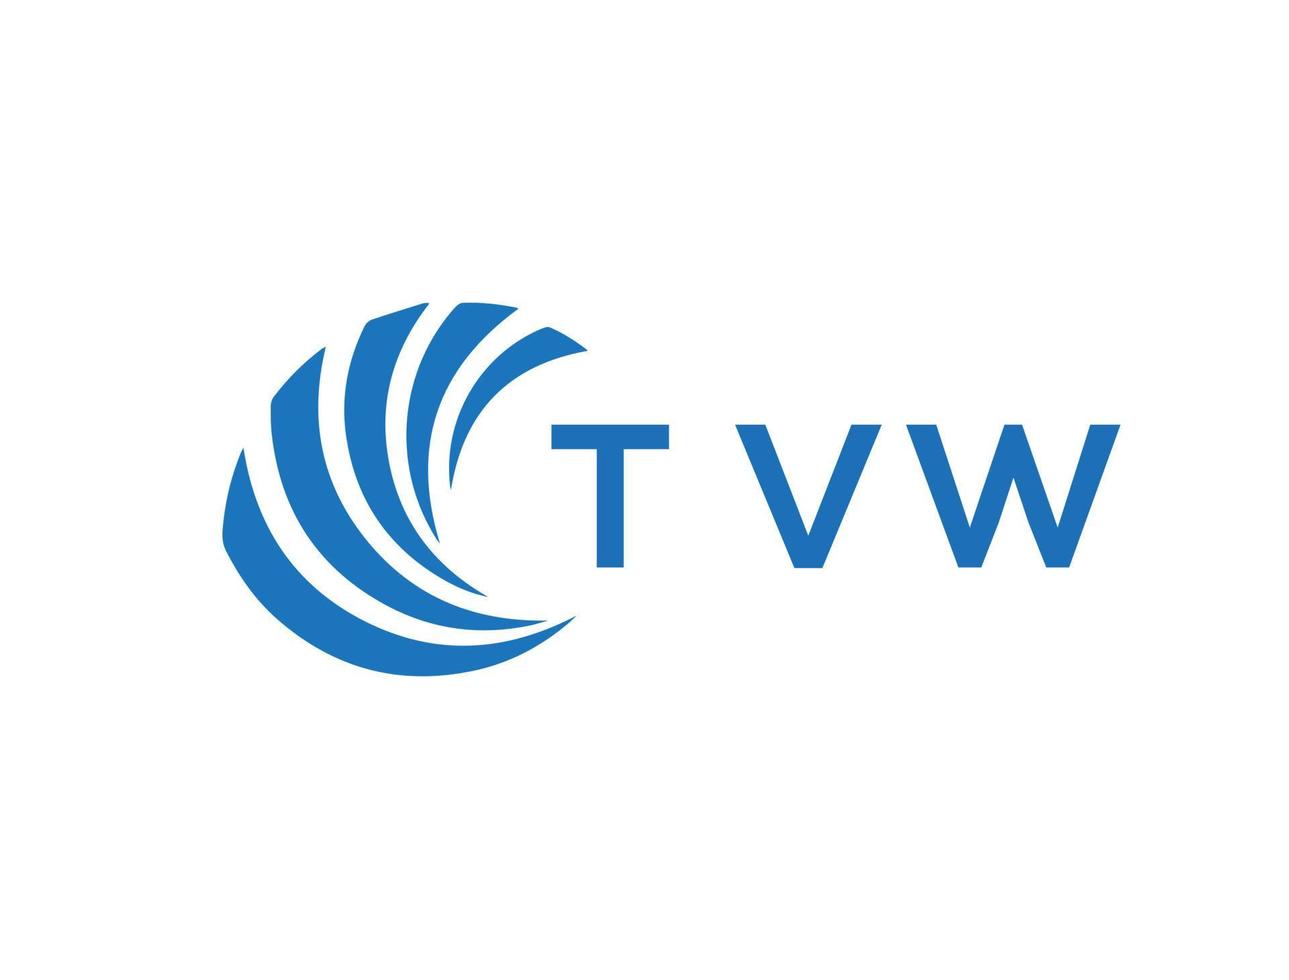 TVW letter logo design on white background. TVW creative circle letter logo concept. TVW letter design. vector